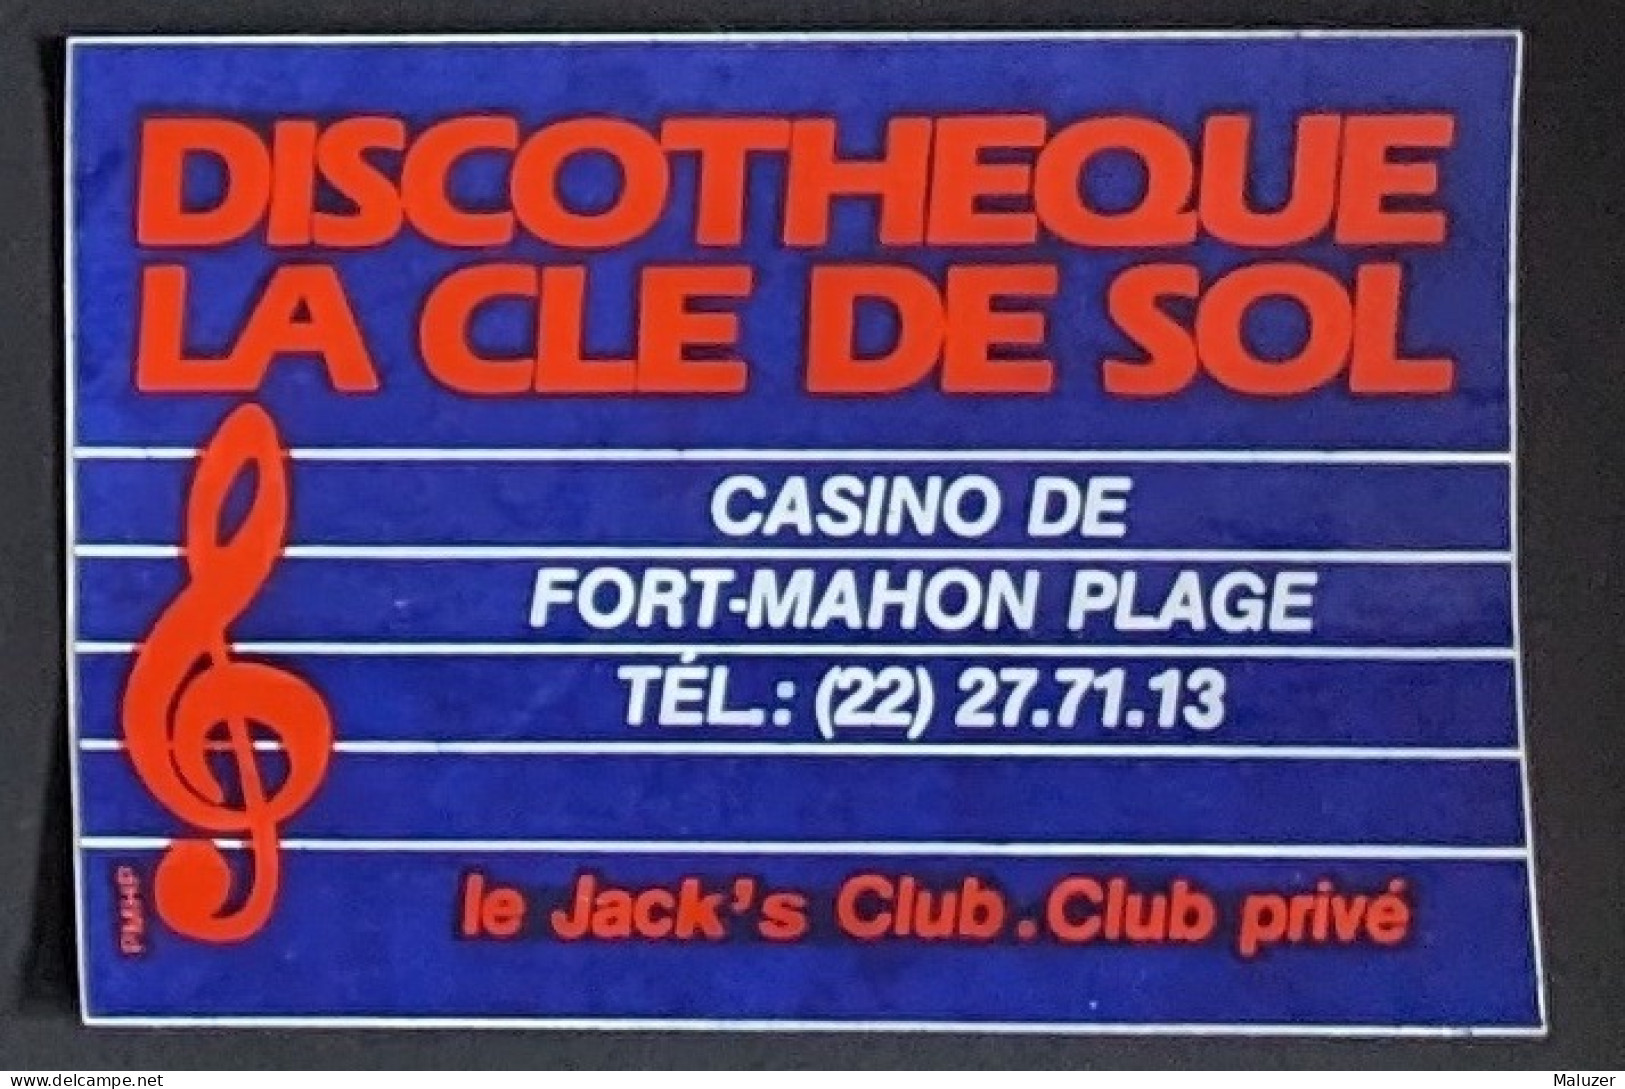 AUTOCOLLANT DISCOTHEQUE LA CLE DE SOL - CASINO DE FORT-MAHON PLAGE - LE JACK'S CLUB - CLUB PRIVÉ - 80 SOMME - DANCING - Stickers